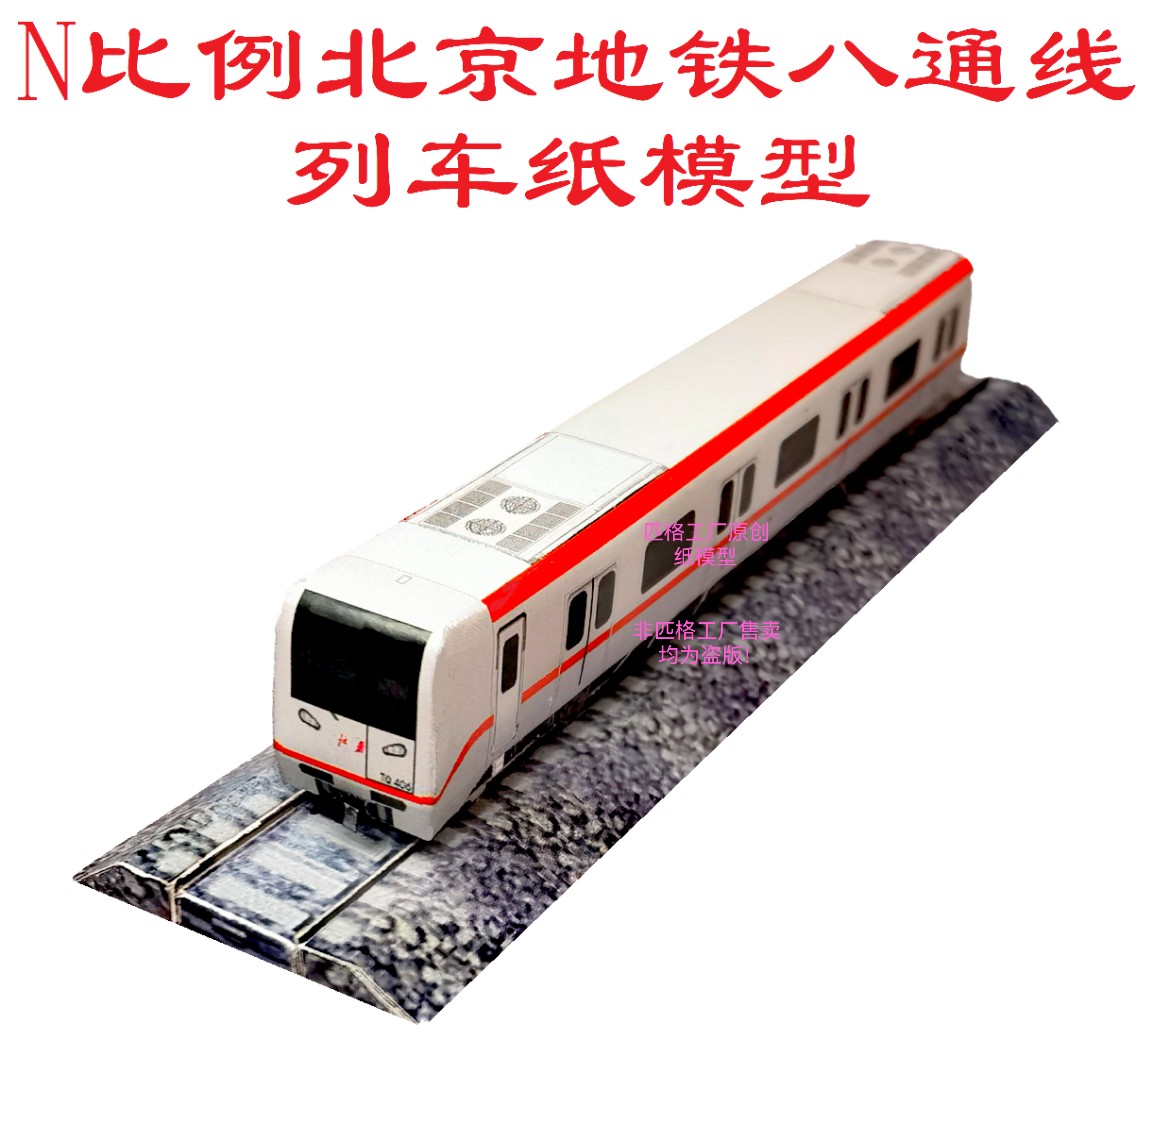 n比例北京地铁八通线地铁列车模型3D纸模DIY手工火车高铁地铁模型